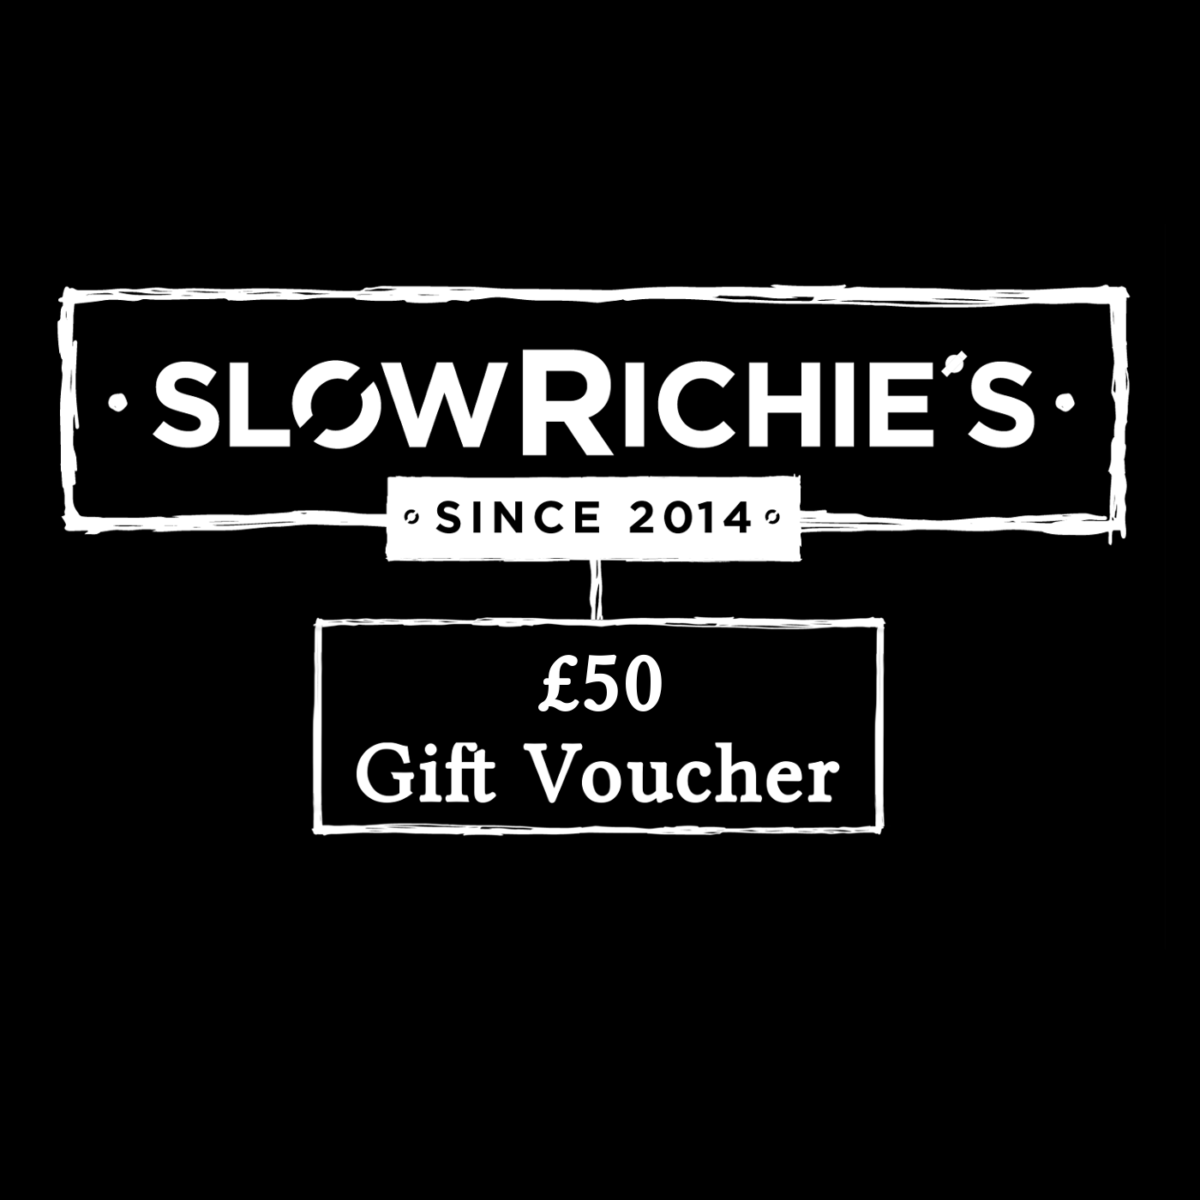 Slow Richie's £50 Gift Voucher